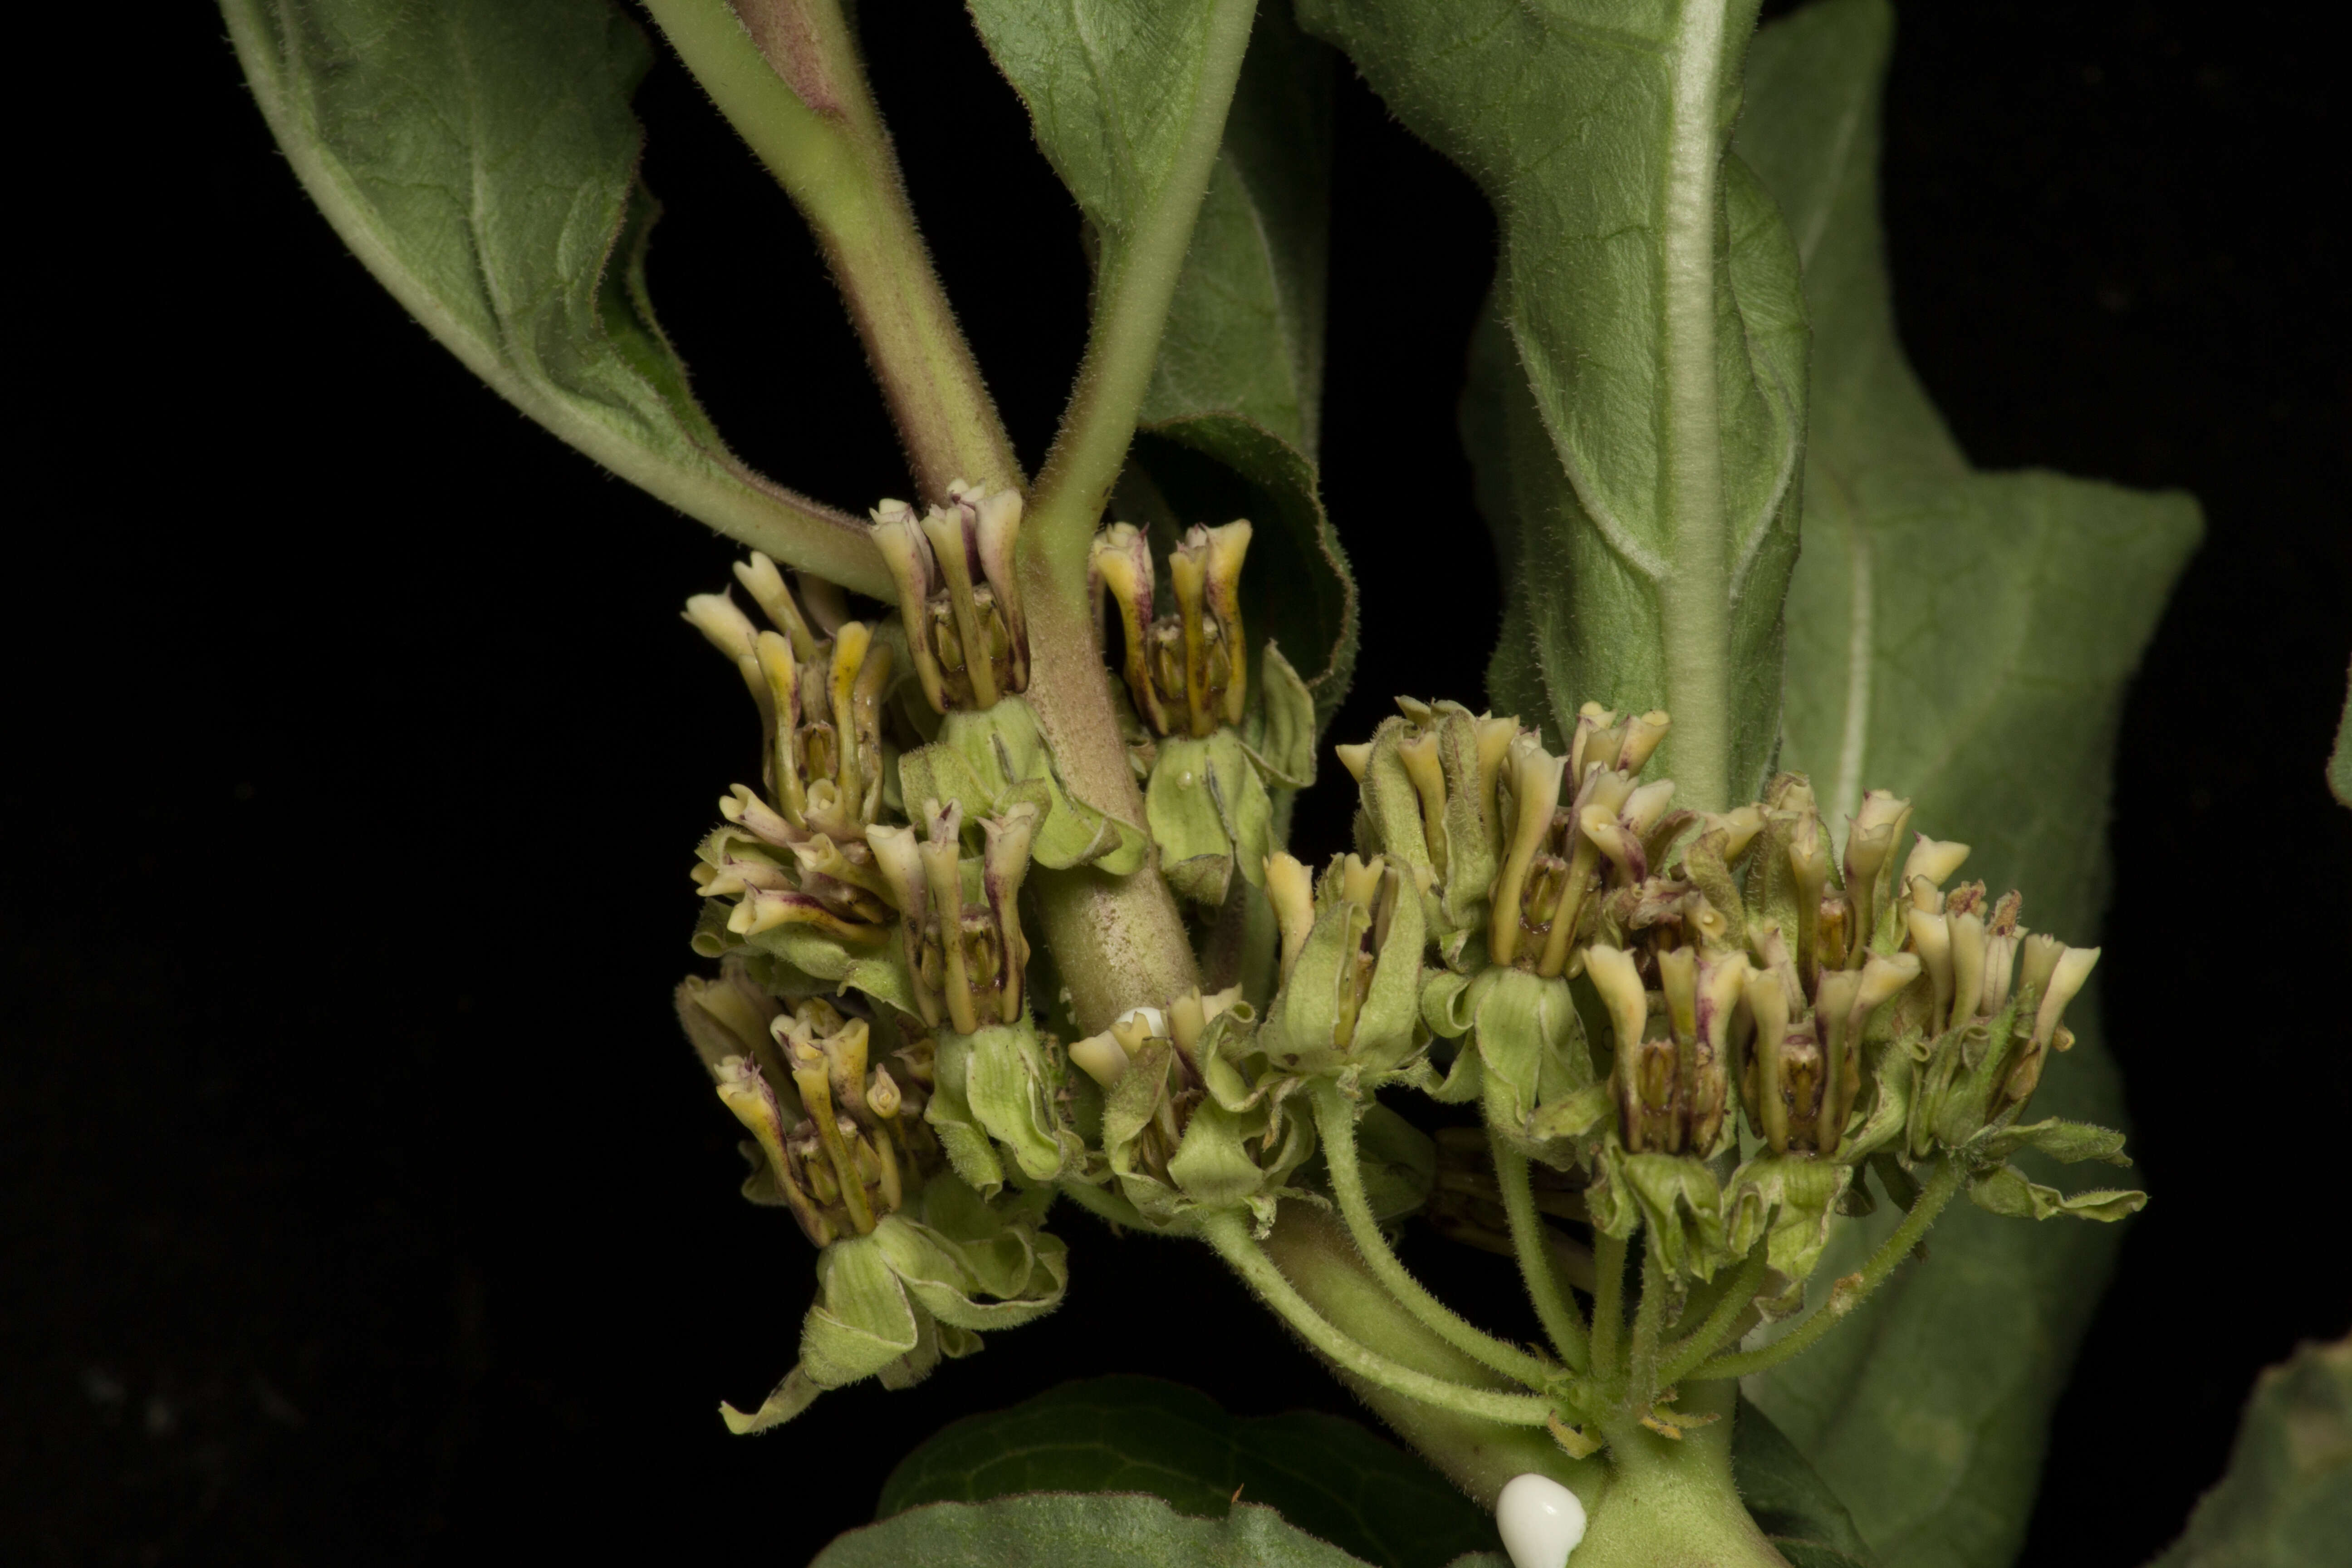 Image of zizotes milkweed